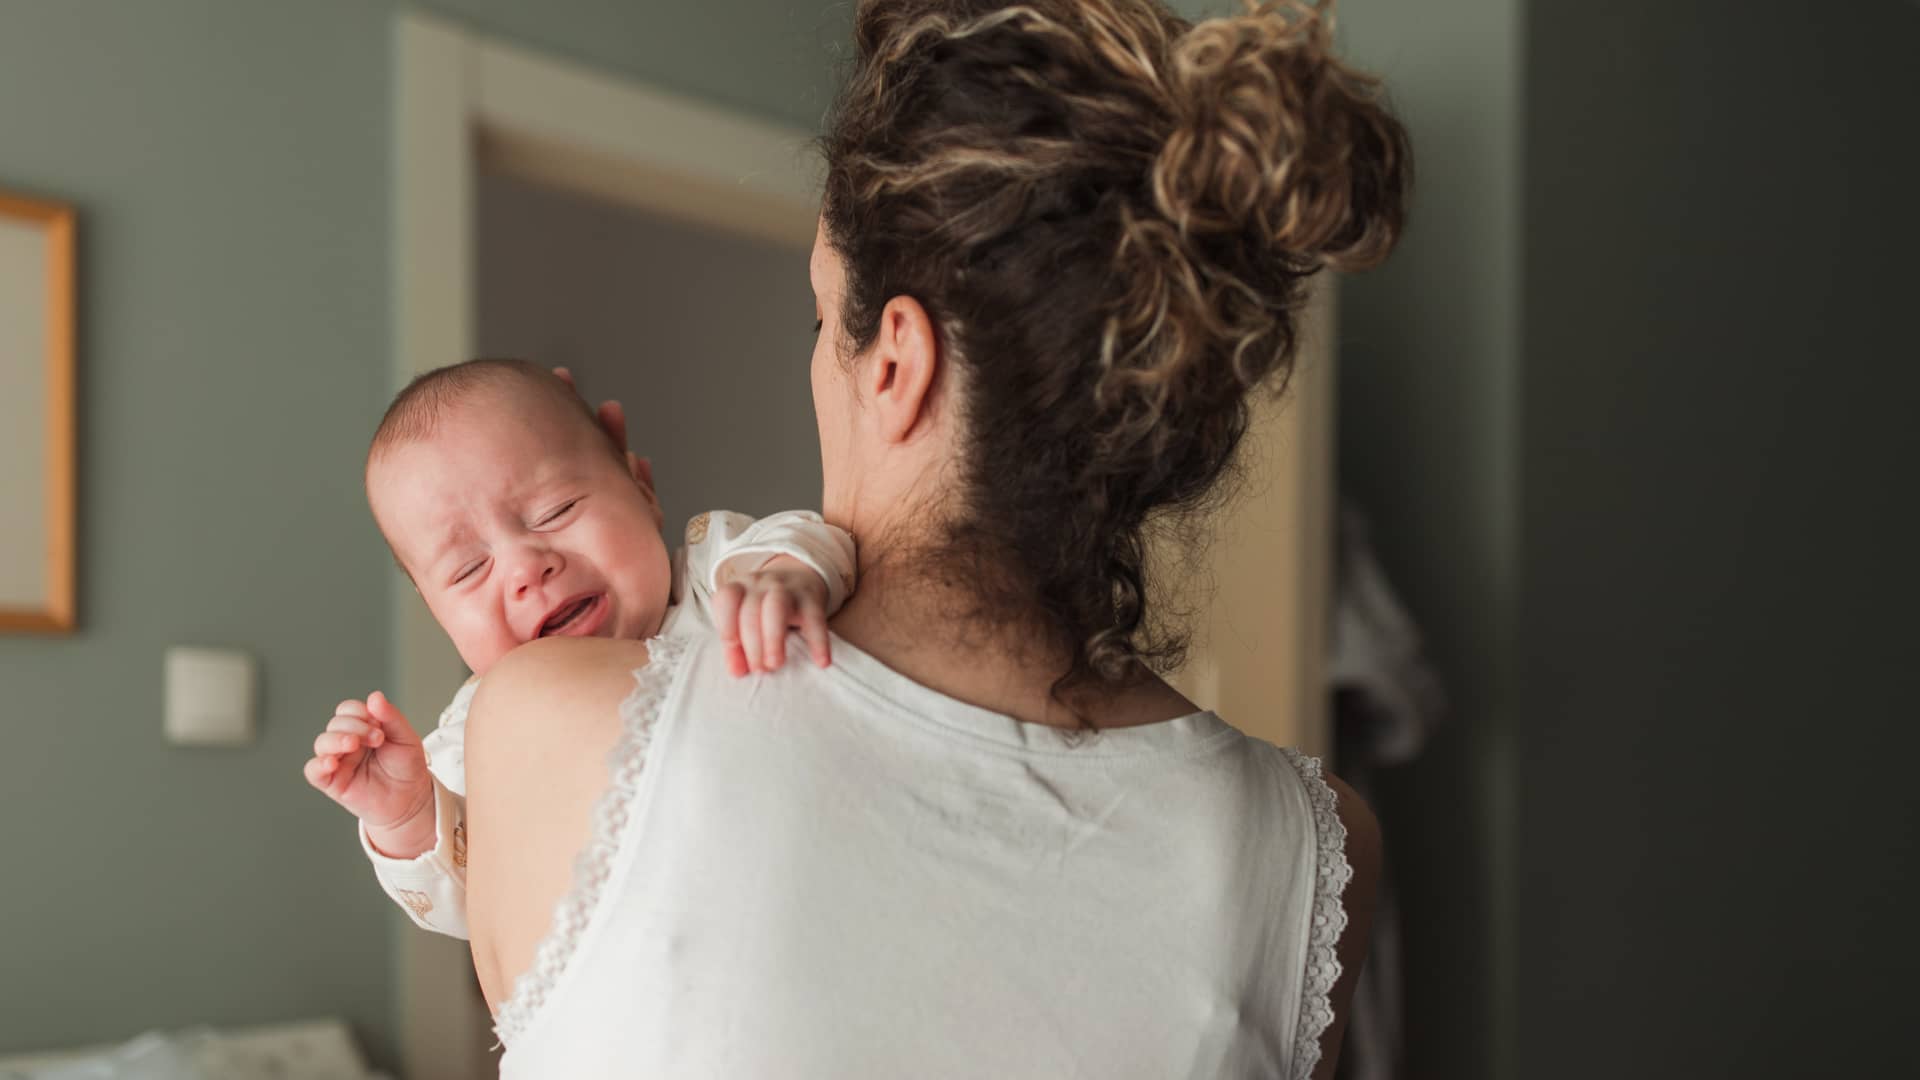 Bebé recién nacido llorando en brazos de su madre durante el postparto